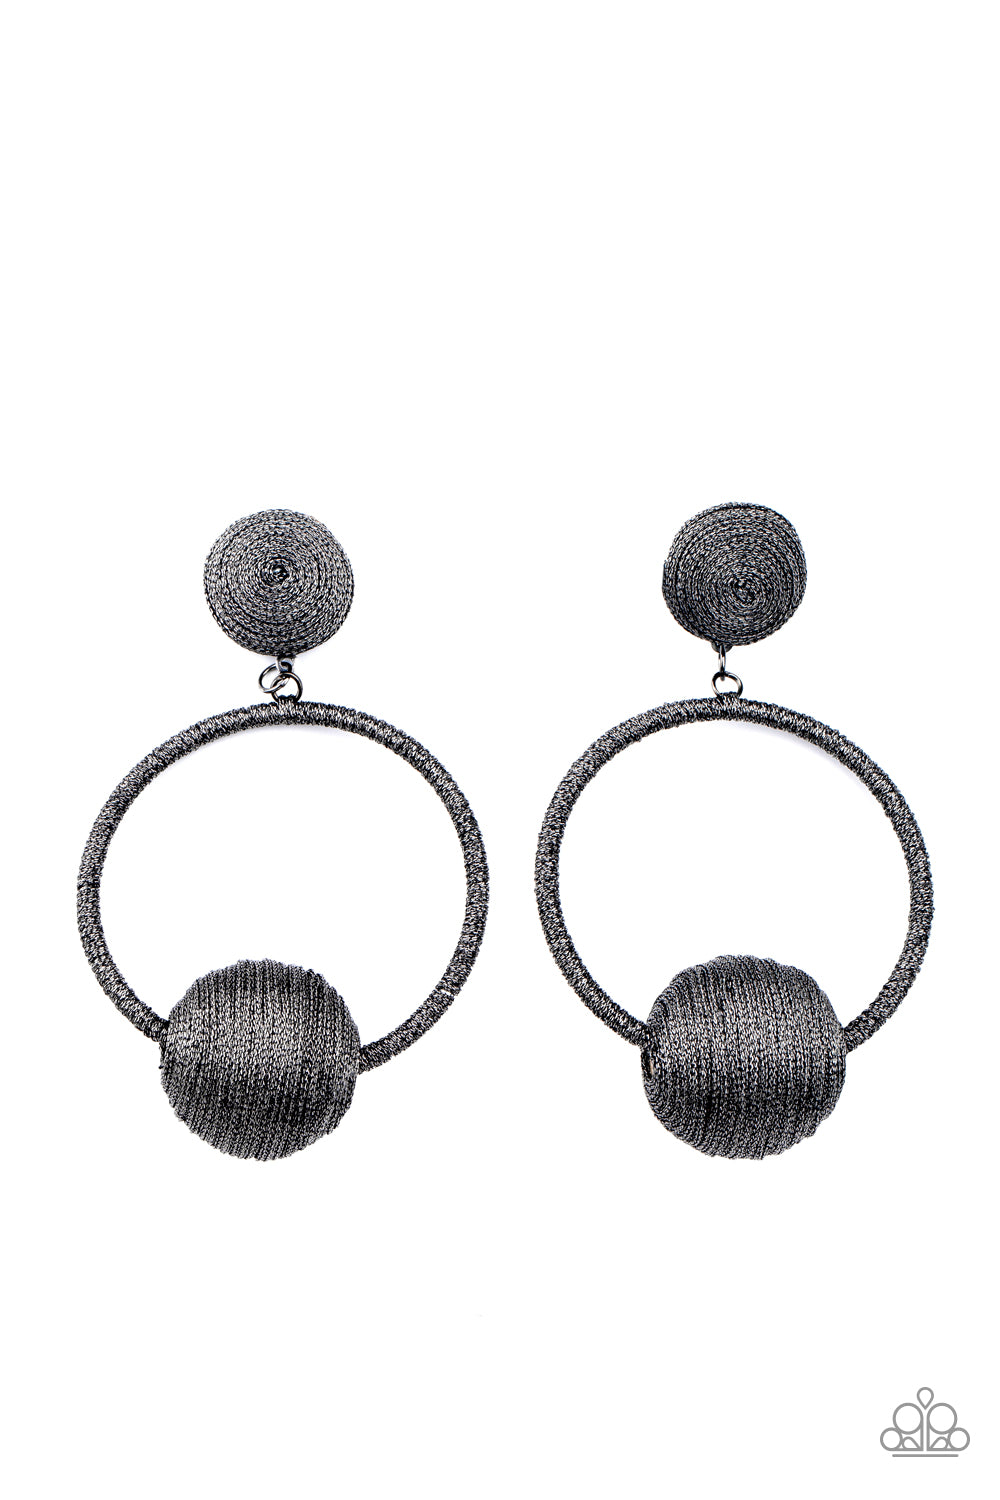 Social Sphere - Black LOP Earrings